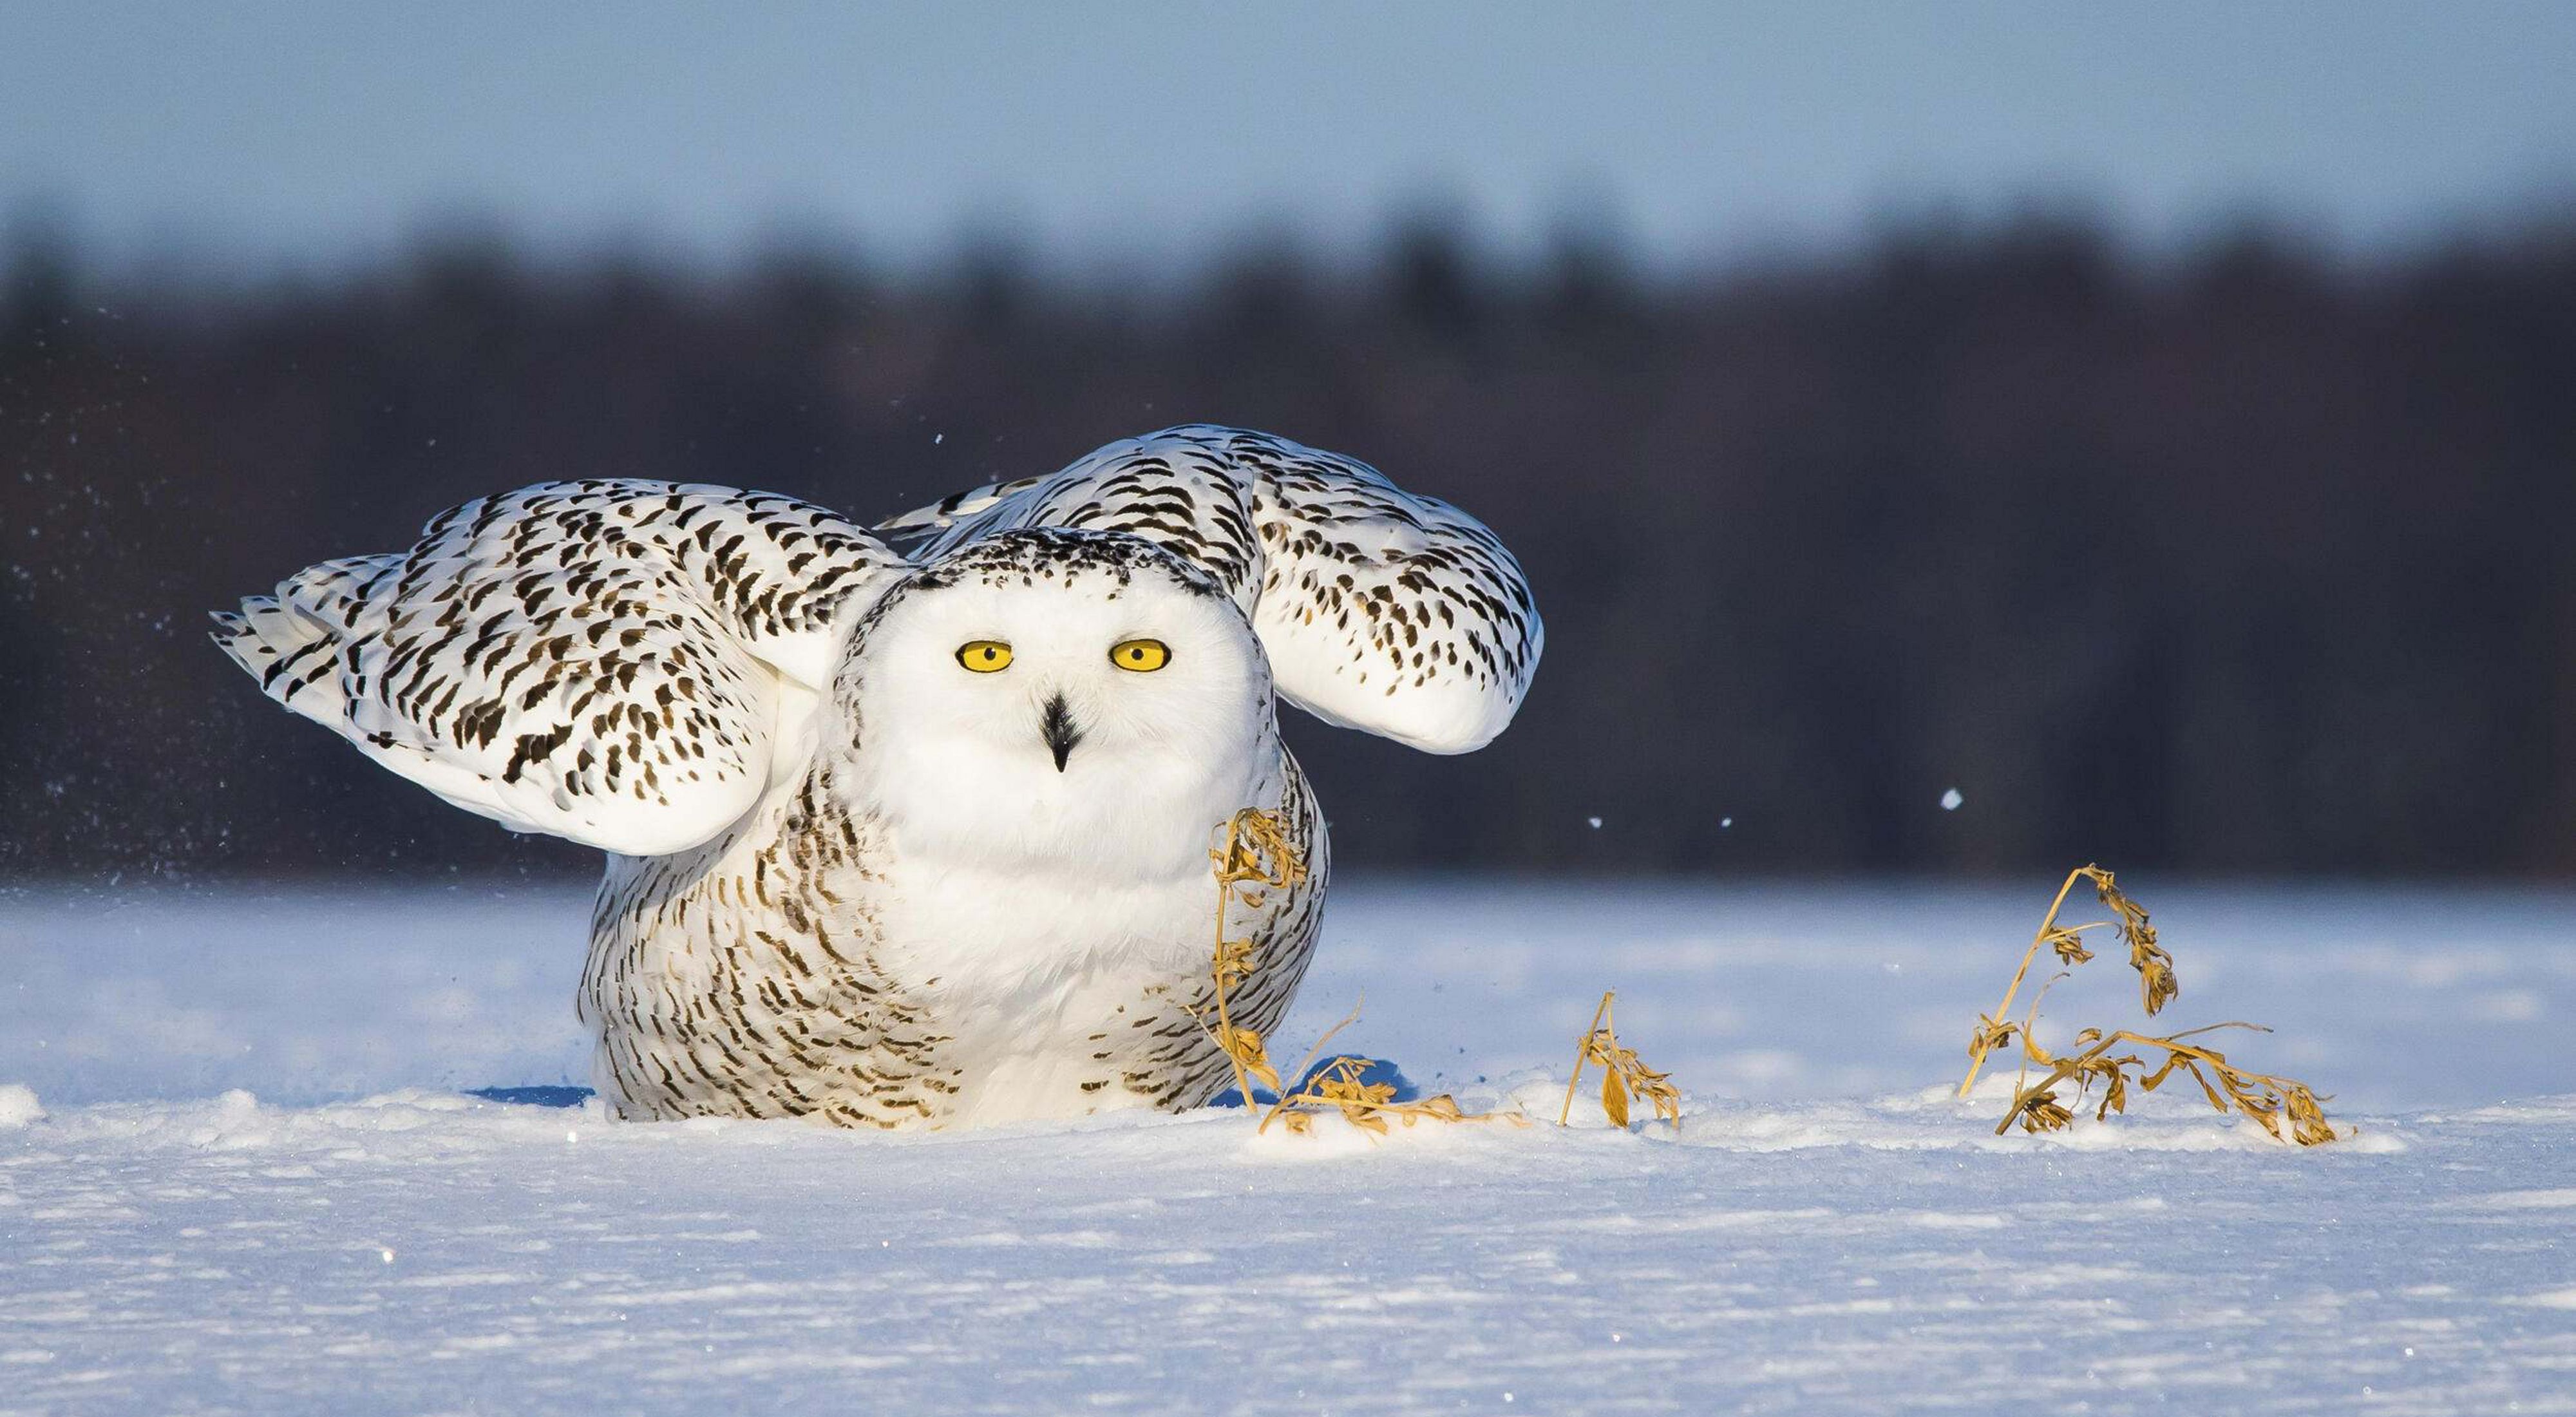 A snowy owl.